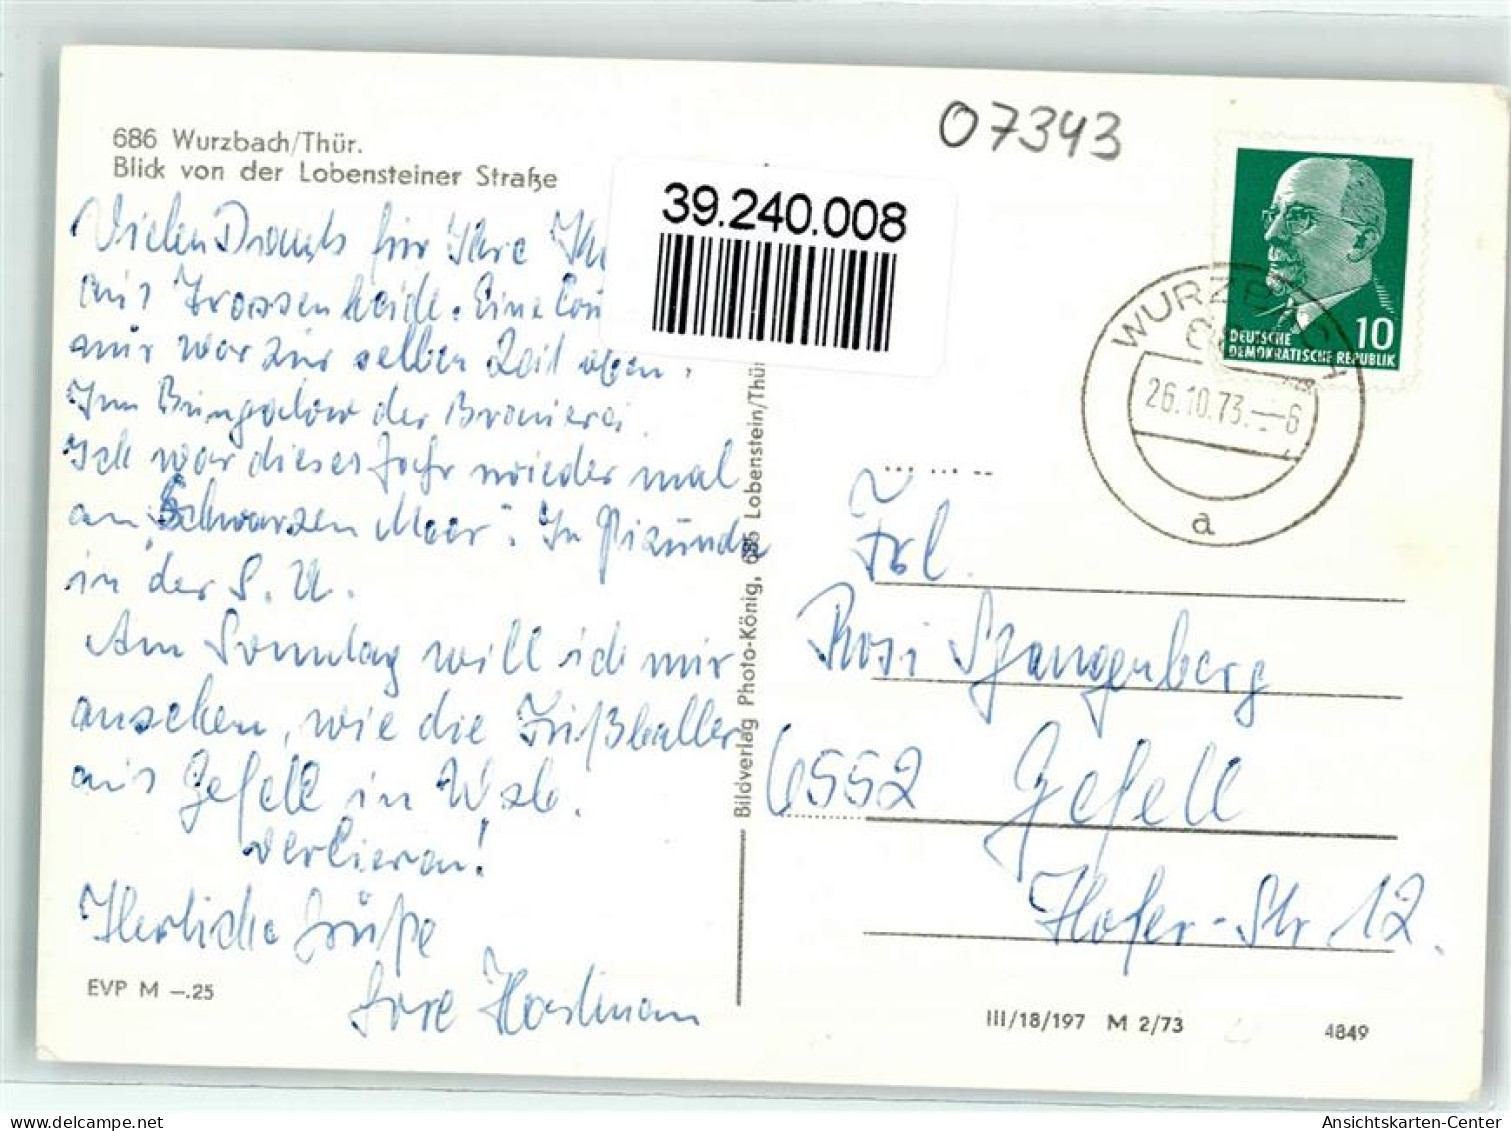 39240008 - Wurzbach - Wurzbach